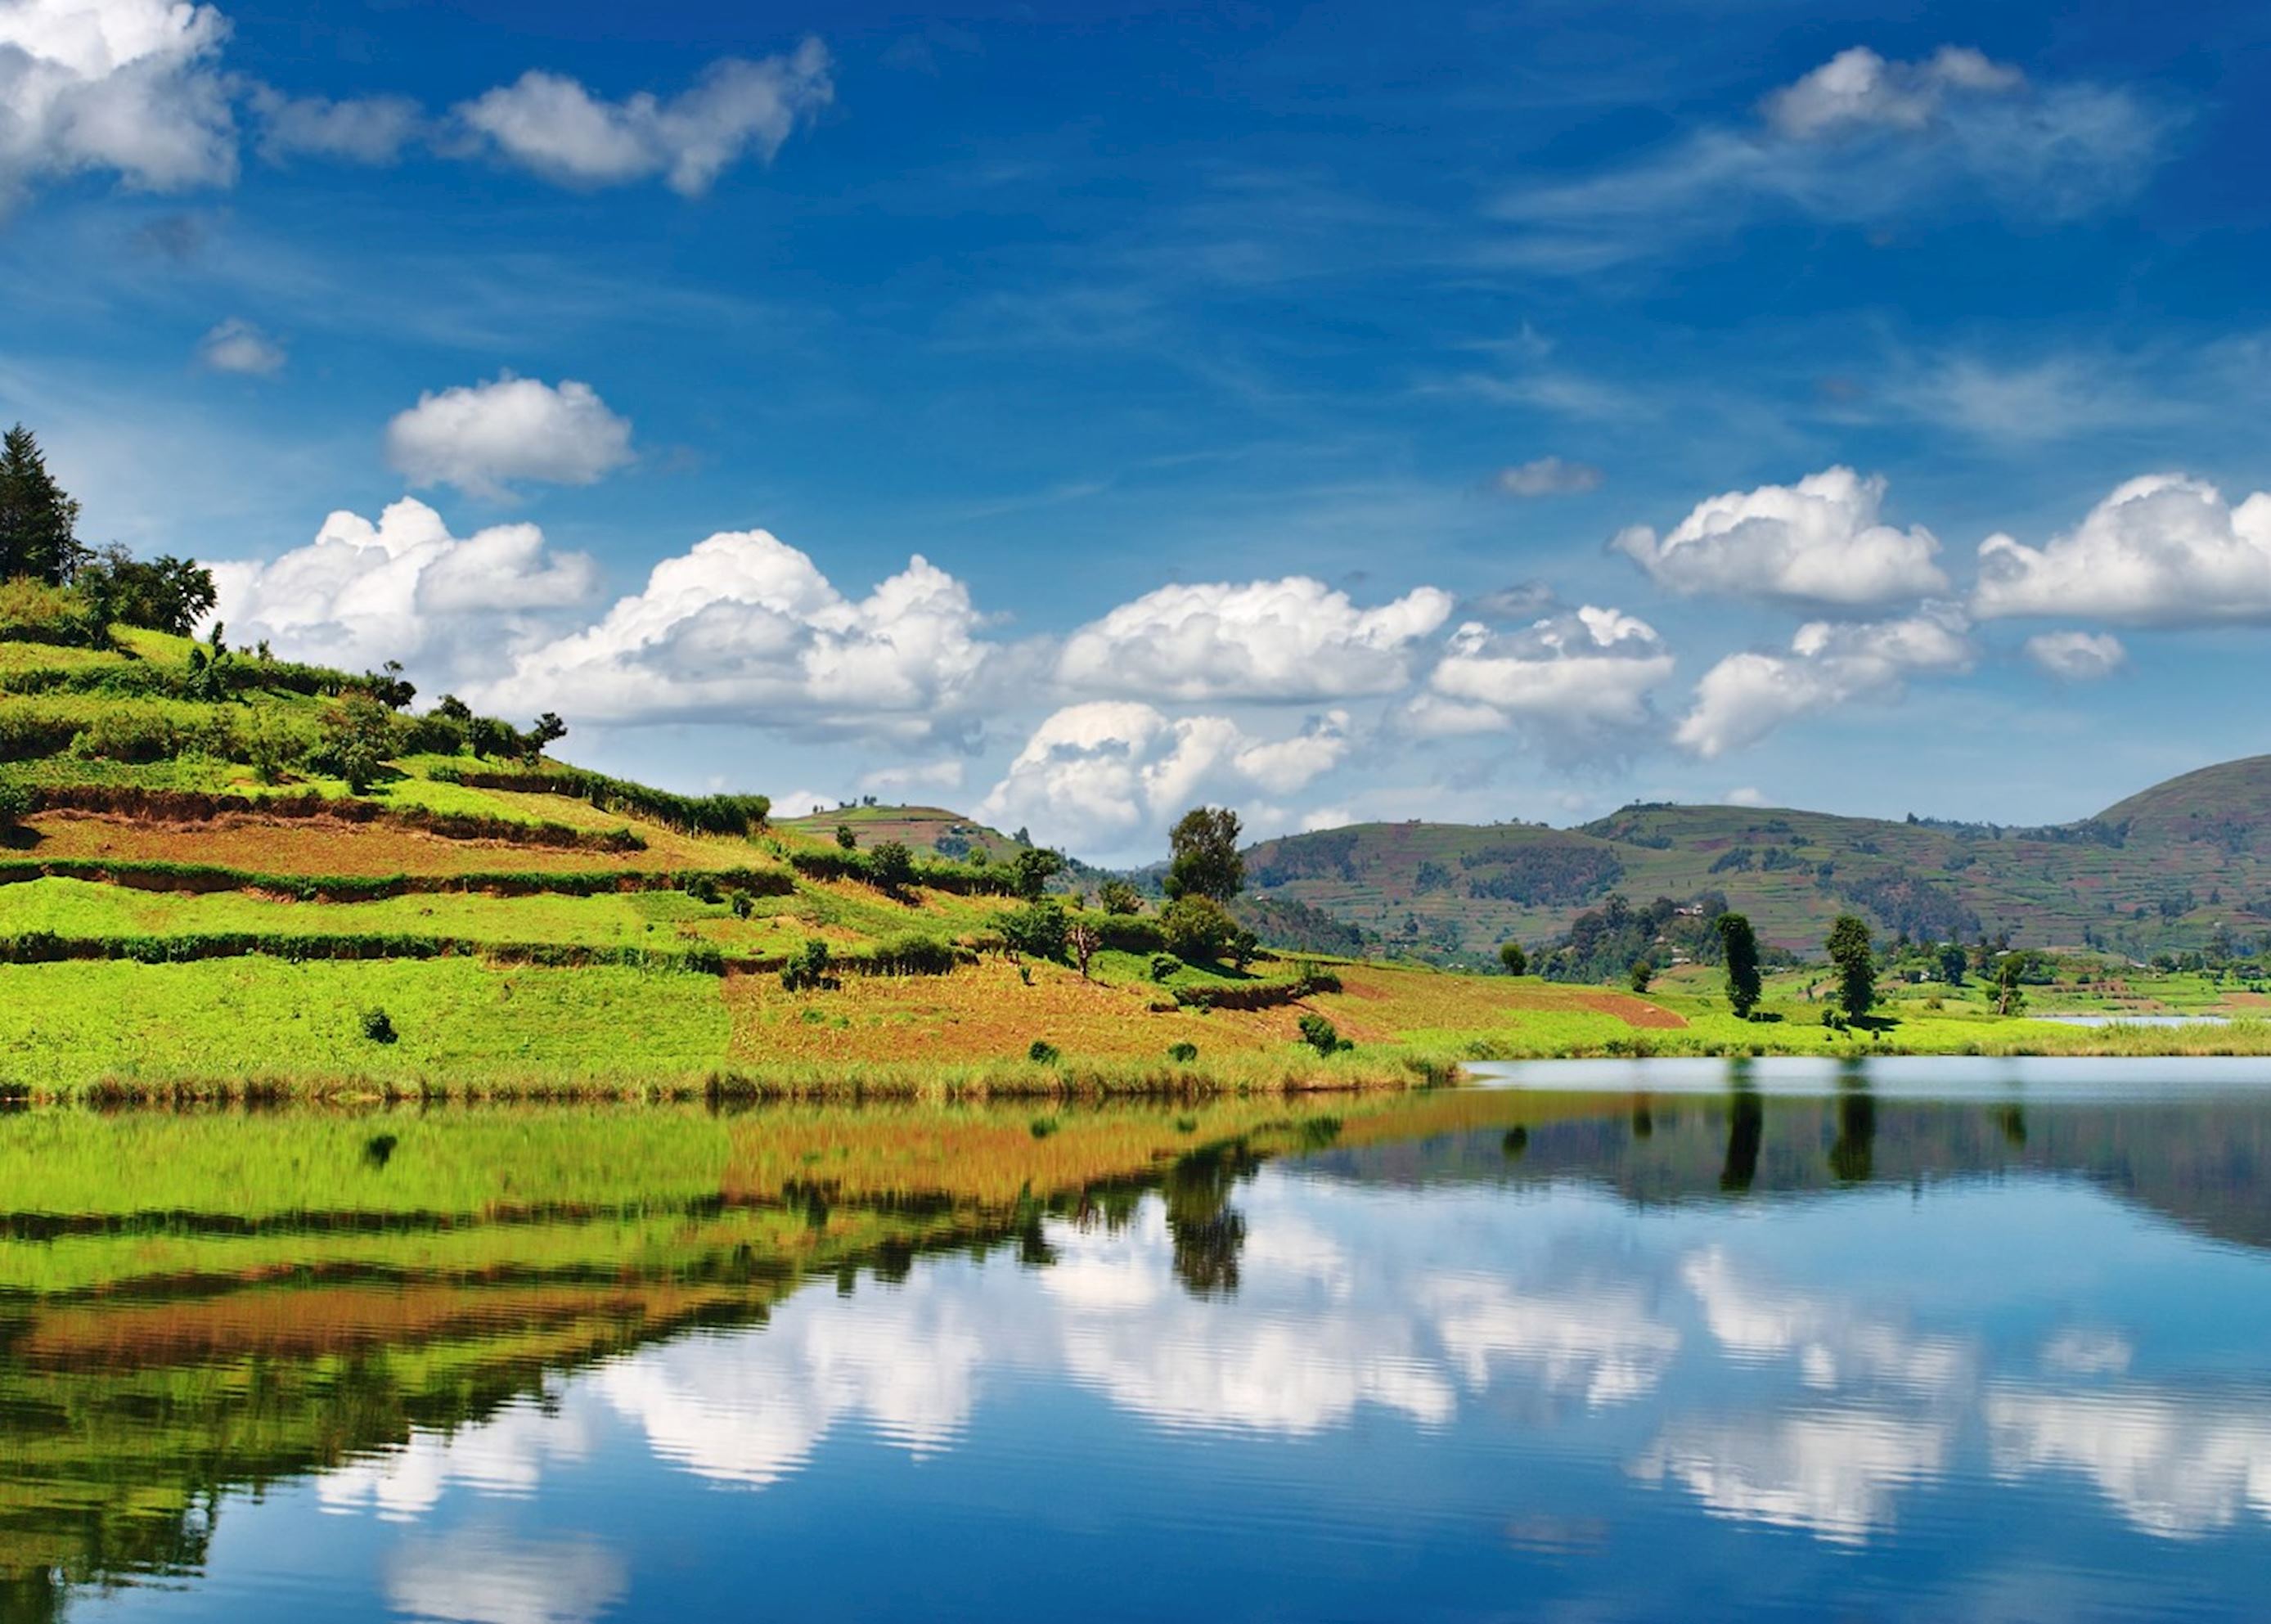 Visit Lake Bunyonyi on a trip to Uganda | Audley Travel US